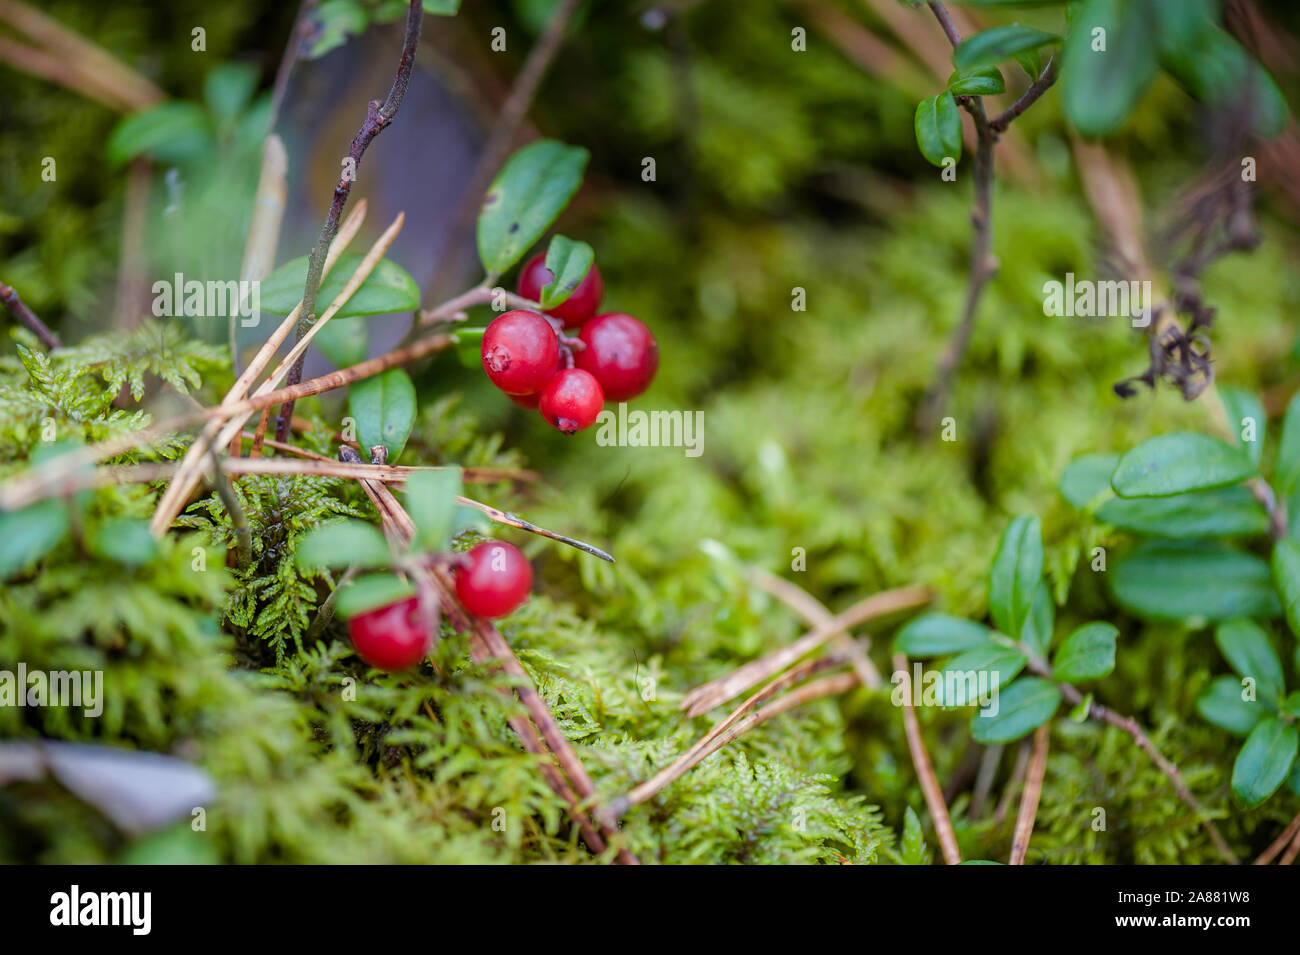 Red Preiselbeeren mit Blättern im Wald. Natur Hintergrund. Red preiselbeere  Reif oder Cowberry wächst in einem Pinienwald mit Moos Hintergrund. Geringe  Tiefe von Stockfotografie - Alamy